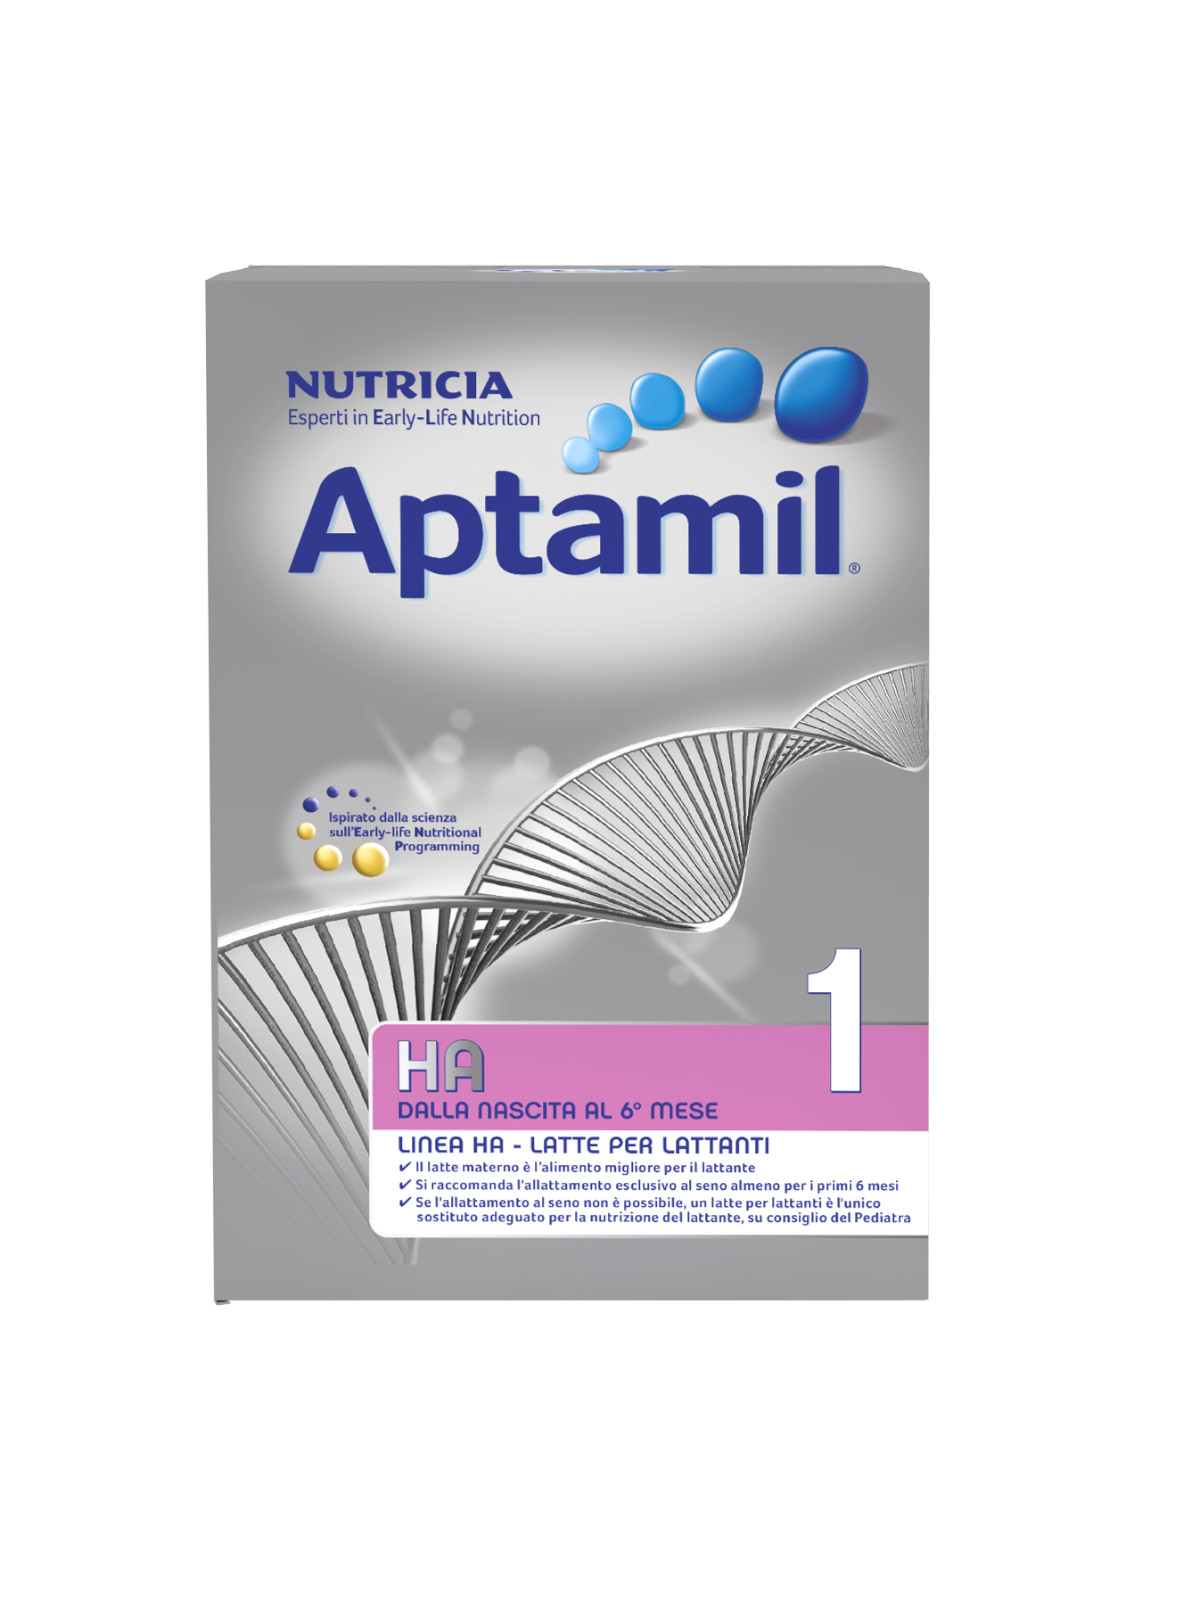 Aptamil - Latte Aptamil Conformil Plus polvere 600g - Prénatal